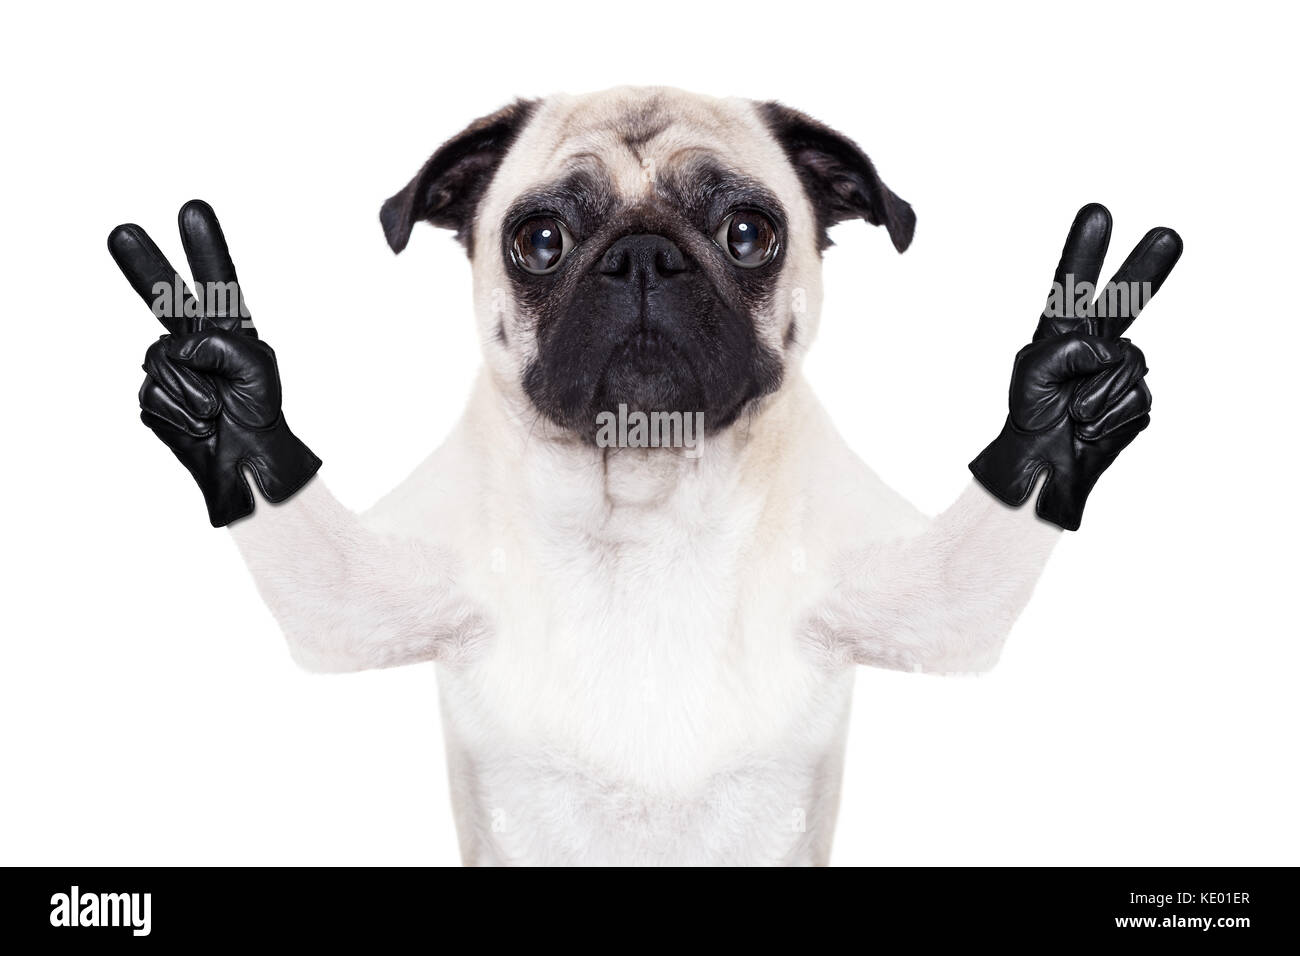 https://c8.alamy.com/comp/KE01ER/cool-pug-dog-with-victory-or-peace-fingers-wearing-gloves-KE01ER.jpg